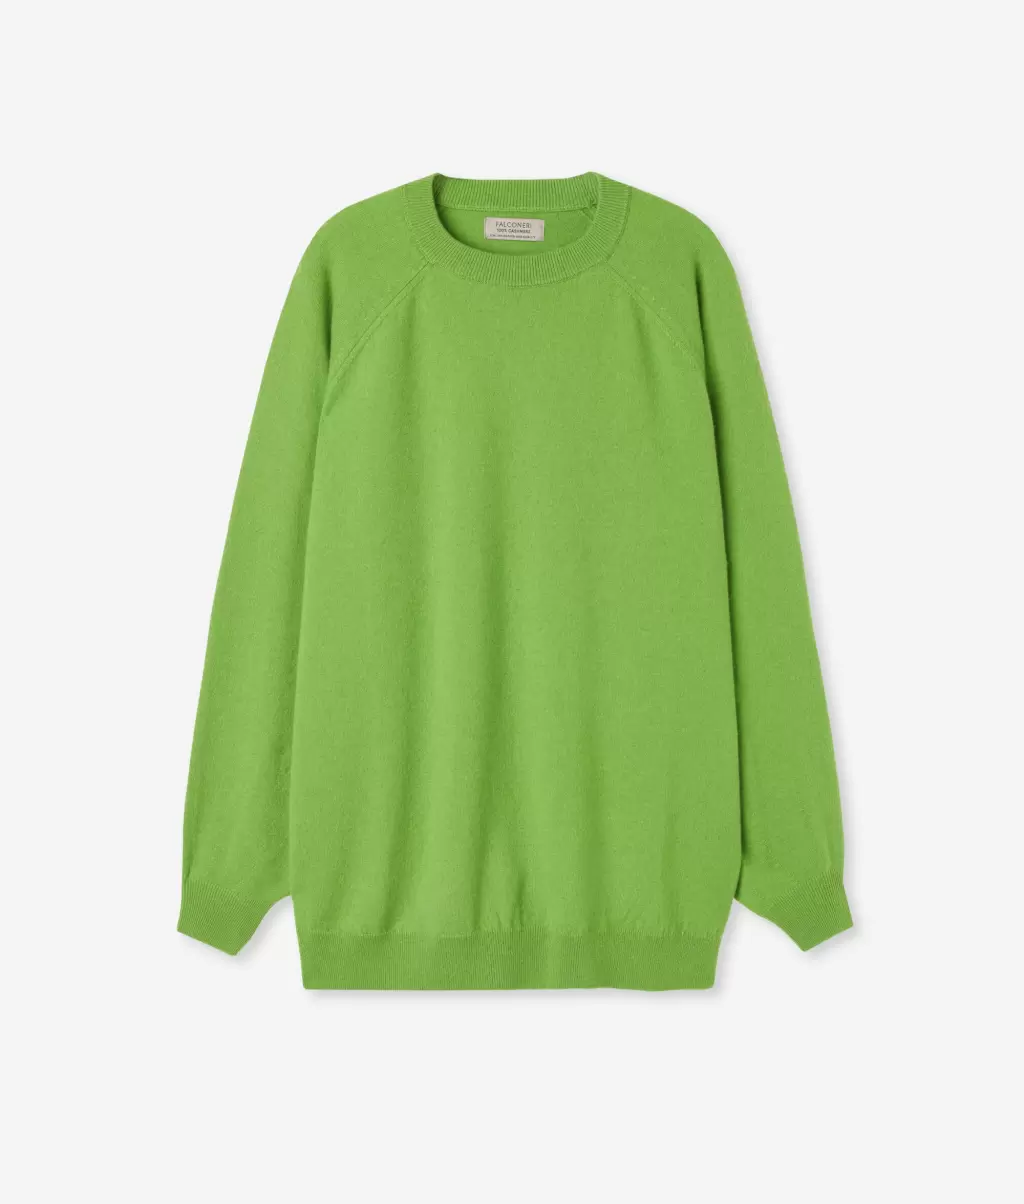 Falconeri Swetry Z Okrągłym Dekoltem Kobieta Bluzka Maxi Z Okągłym Dekoltem Z Kaszmiru Ultrasoft Green - 4